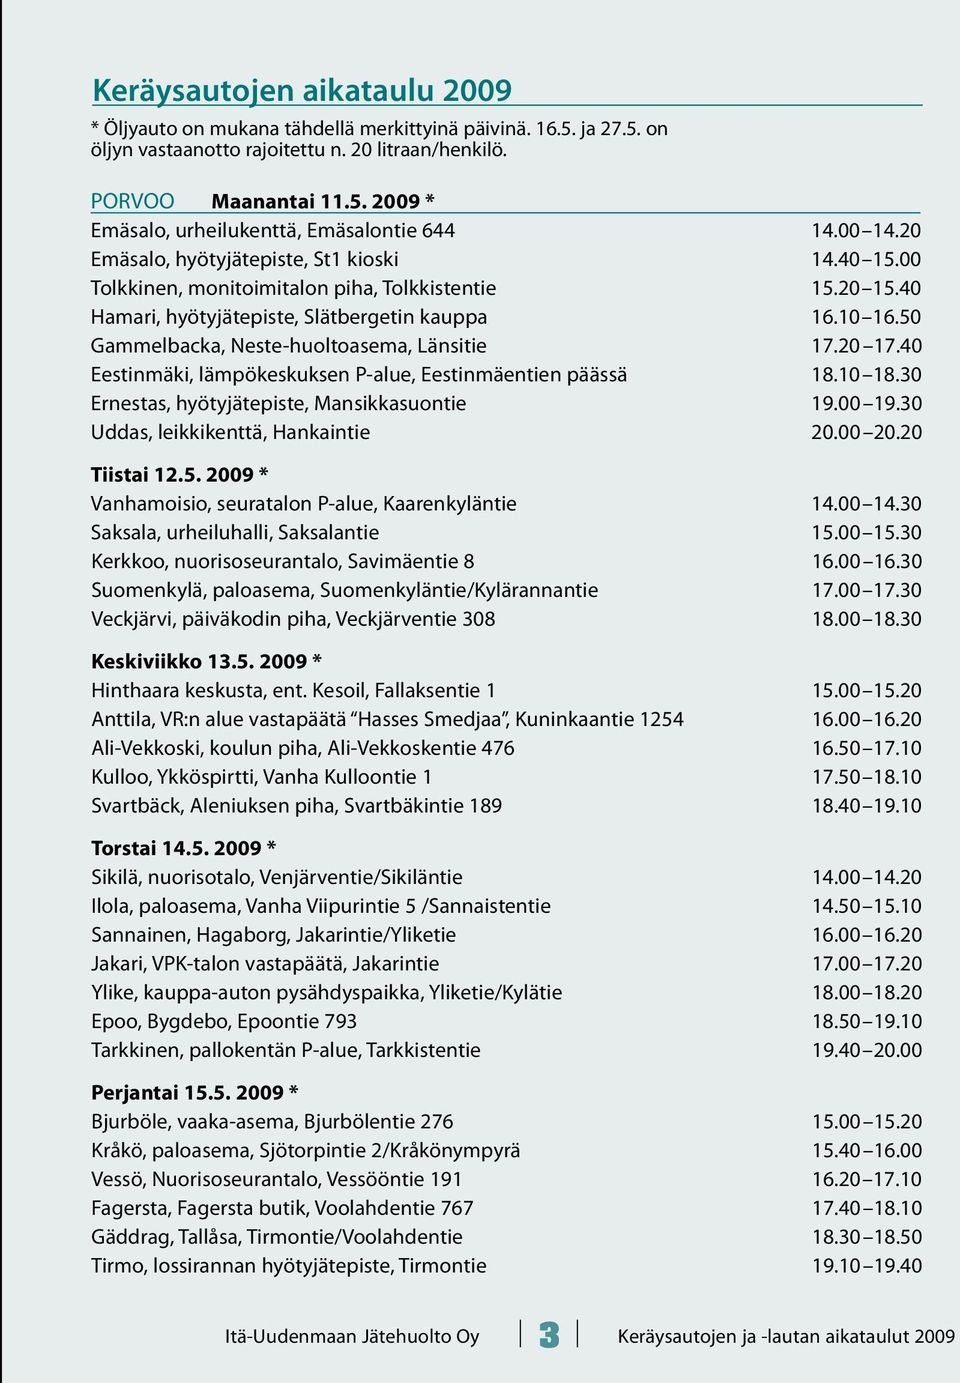 50 Gammelbacka, Neste-huoltoasema, Länsitie 17.20 17.40 Eestinmäki, lämpökeskuksen P-alue, Eestinmäentien päässä 18.10 18.30 Ernestas, hyötyjätepiste, Mansikkasuontie 19.00 19.